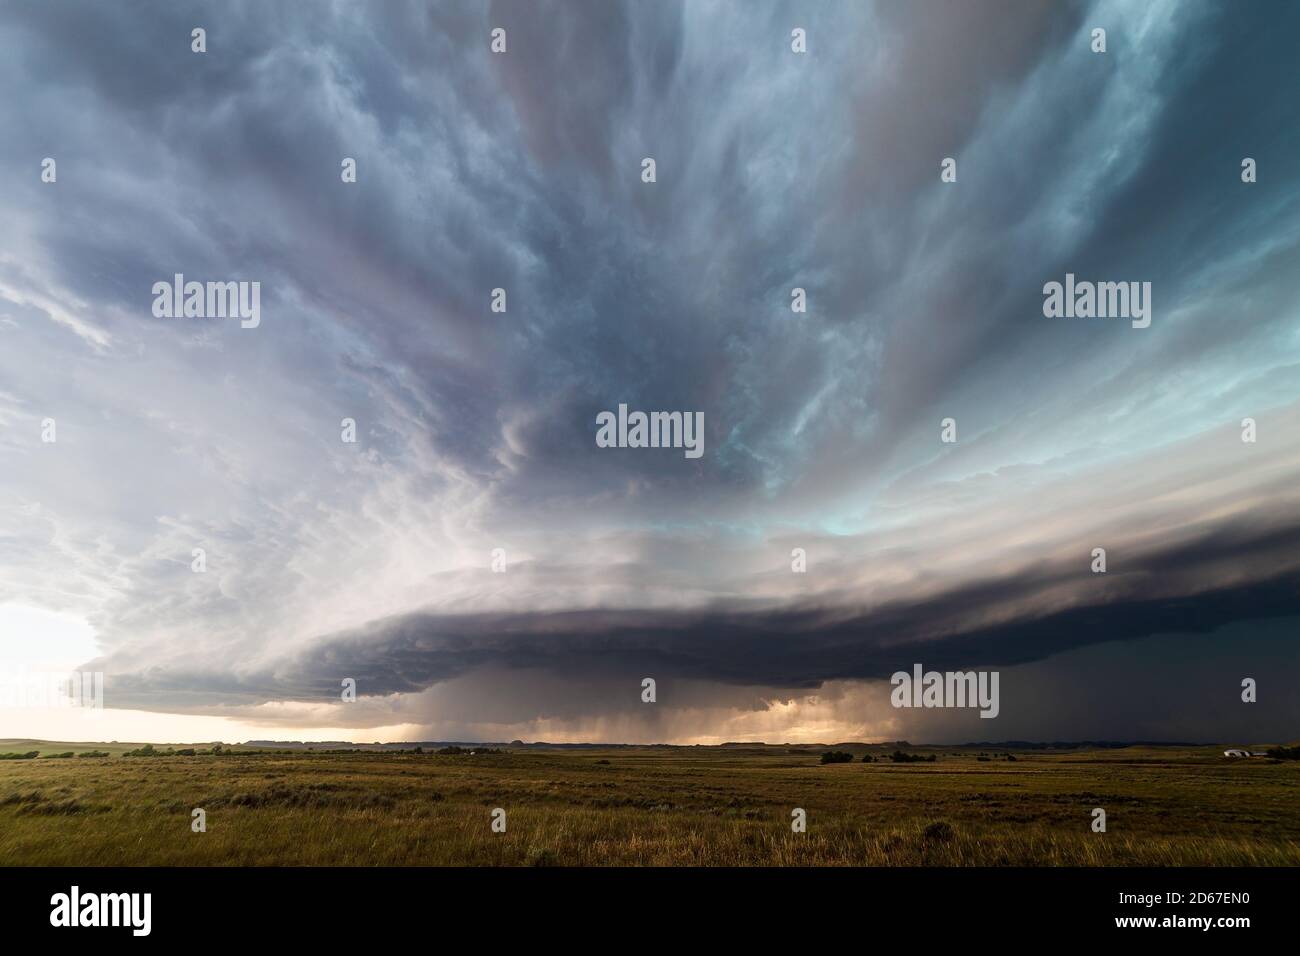 Derecho Sturm mit einer Schelfwolke (arcus) Broadus, Montana, USA Stockfoto